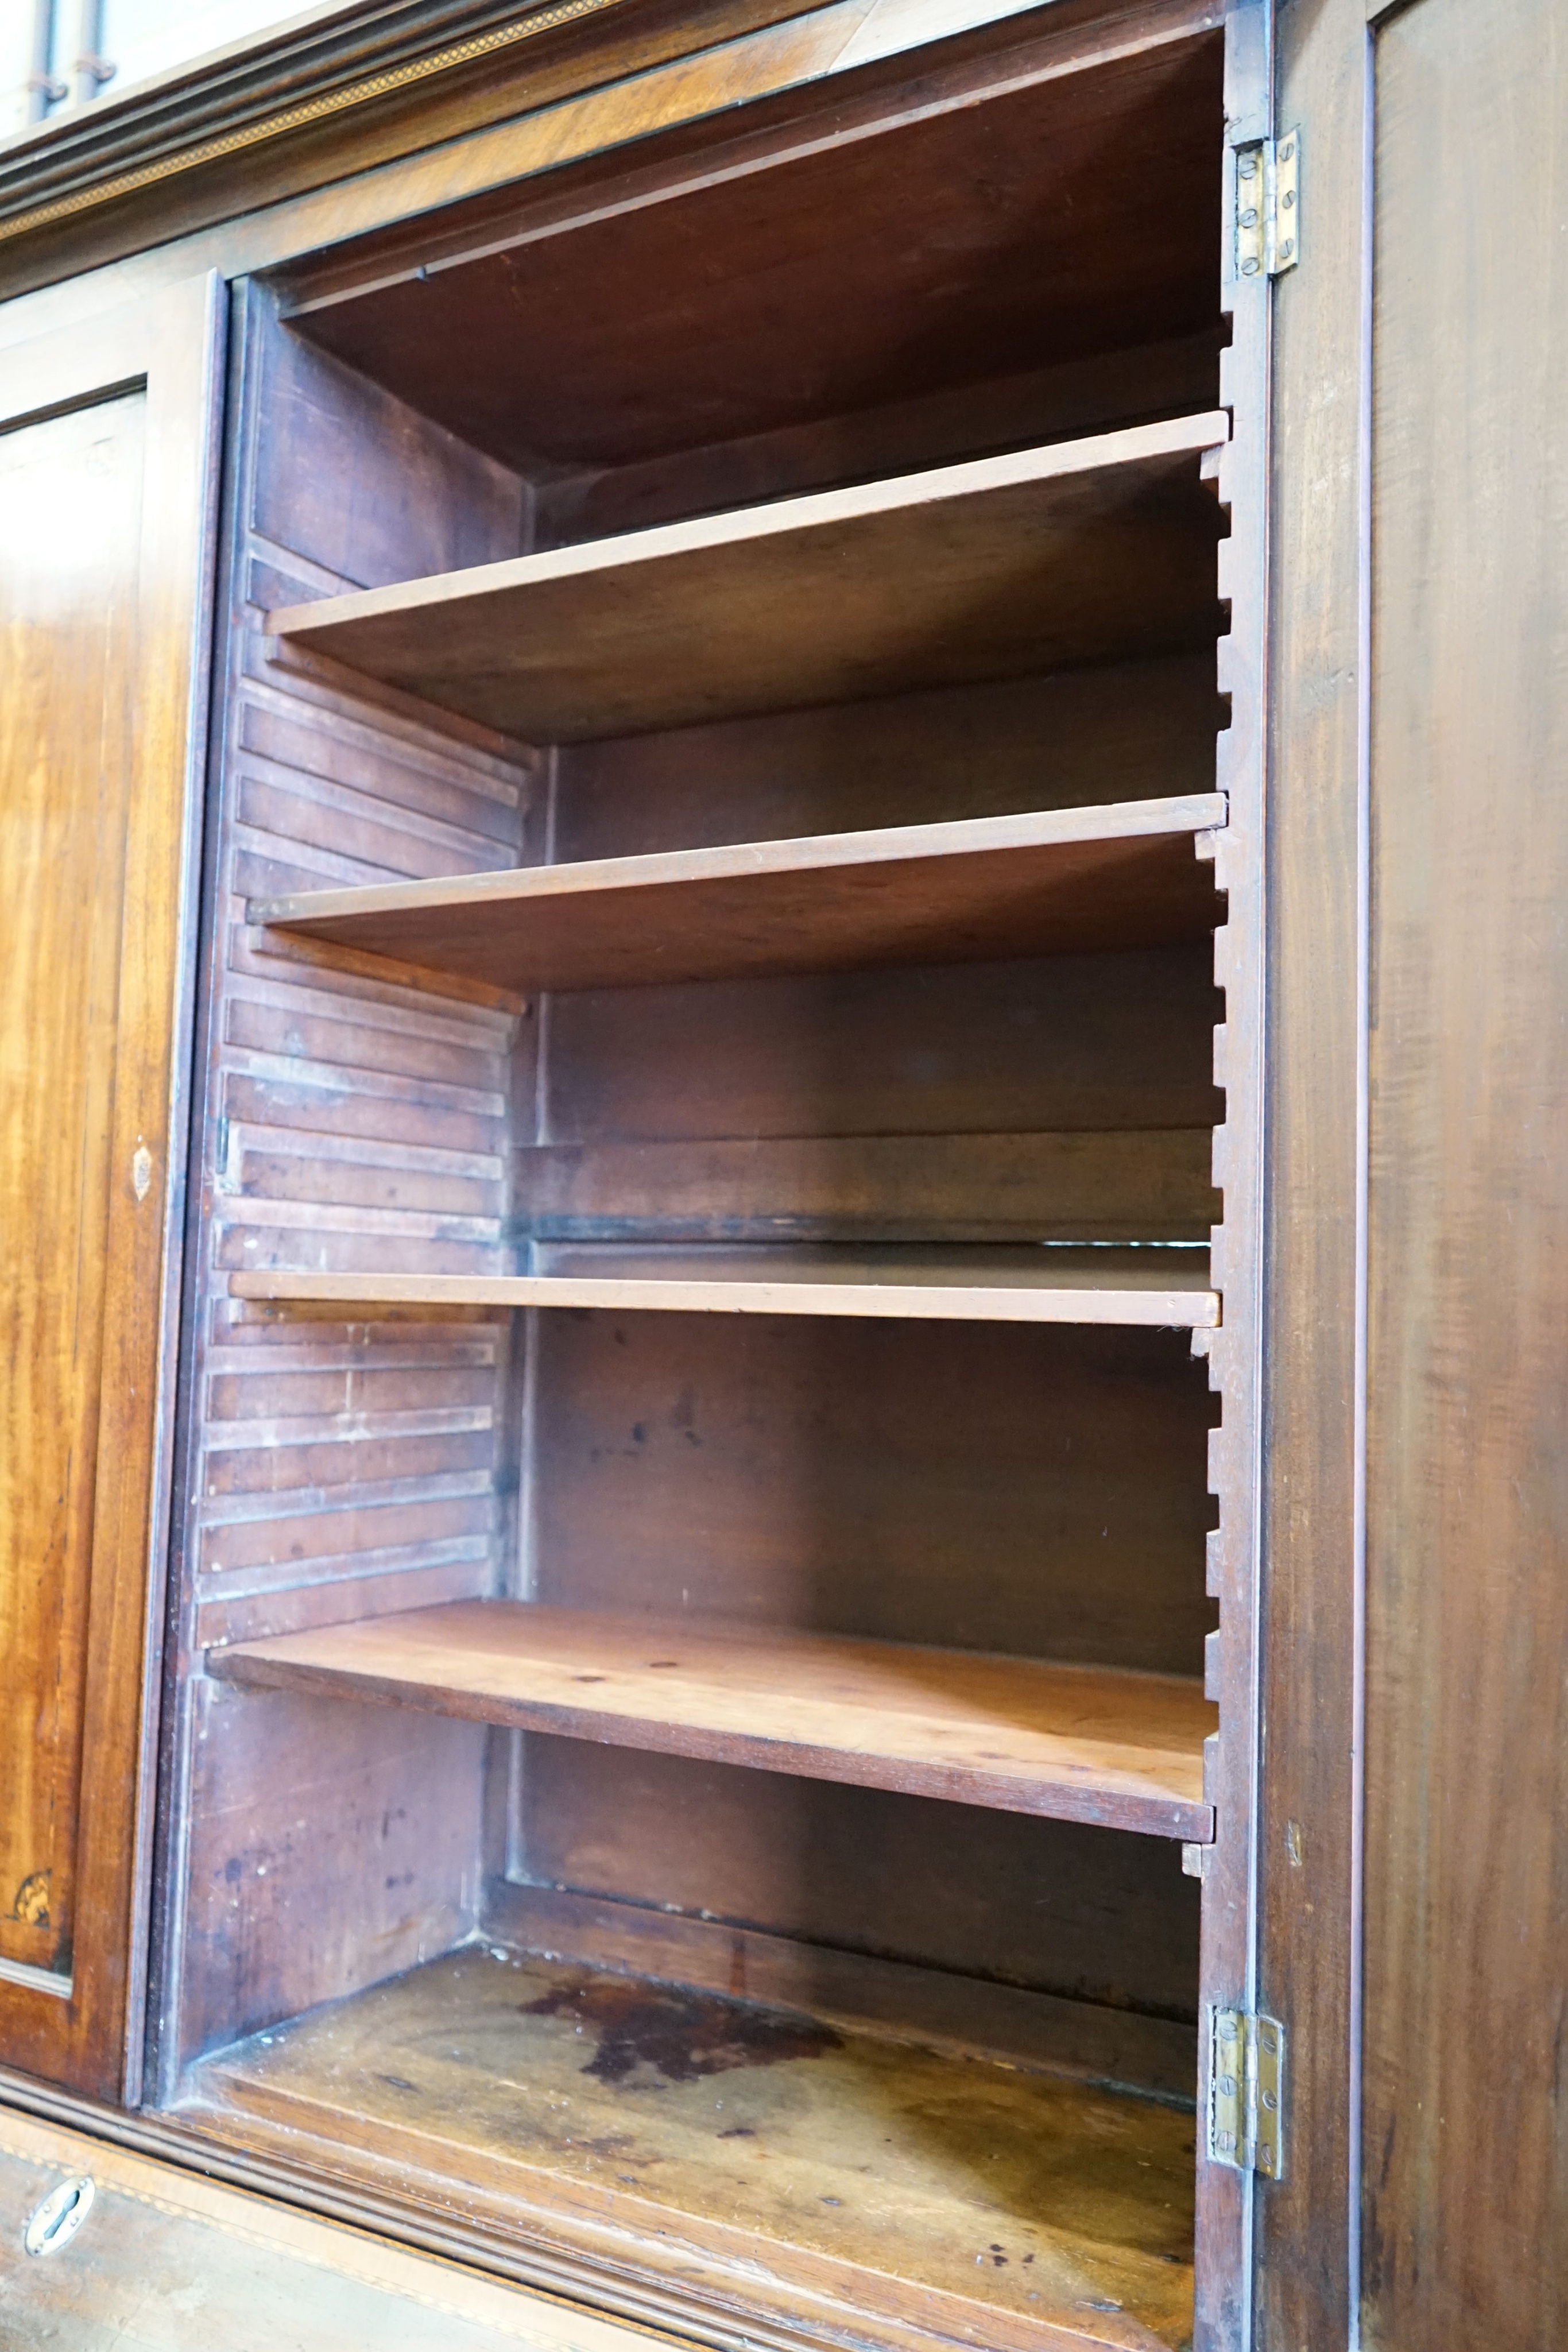 A George III inlaid mahogany bureau bookcase, width 120cm, depth 56cm, height 224cm